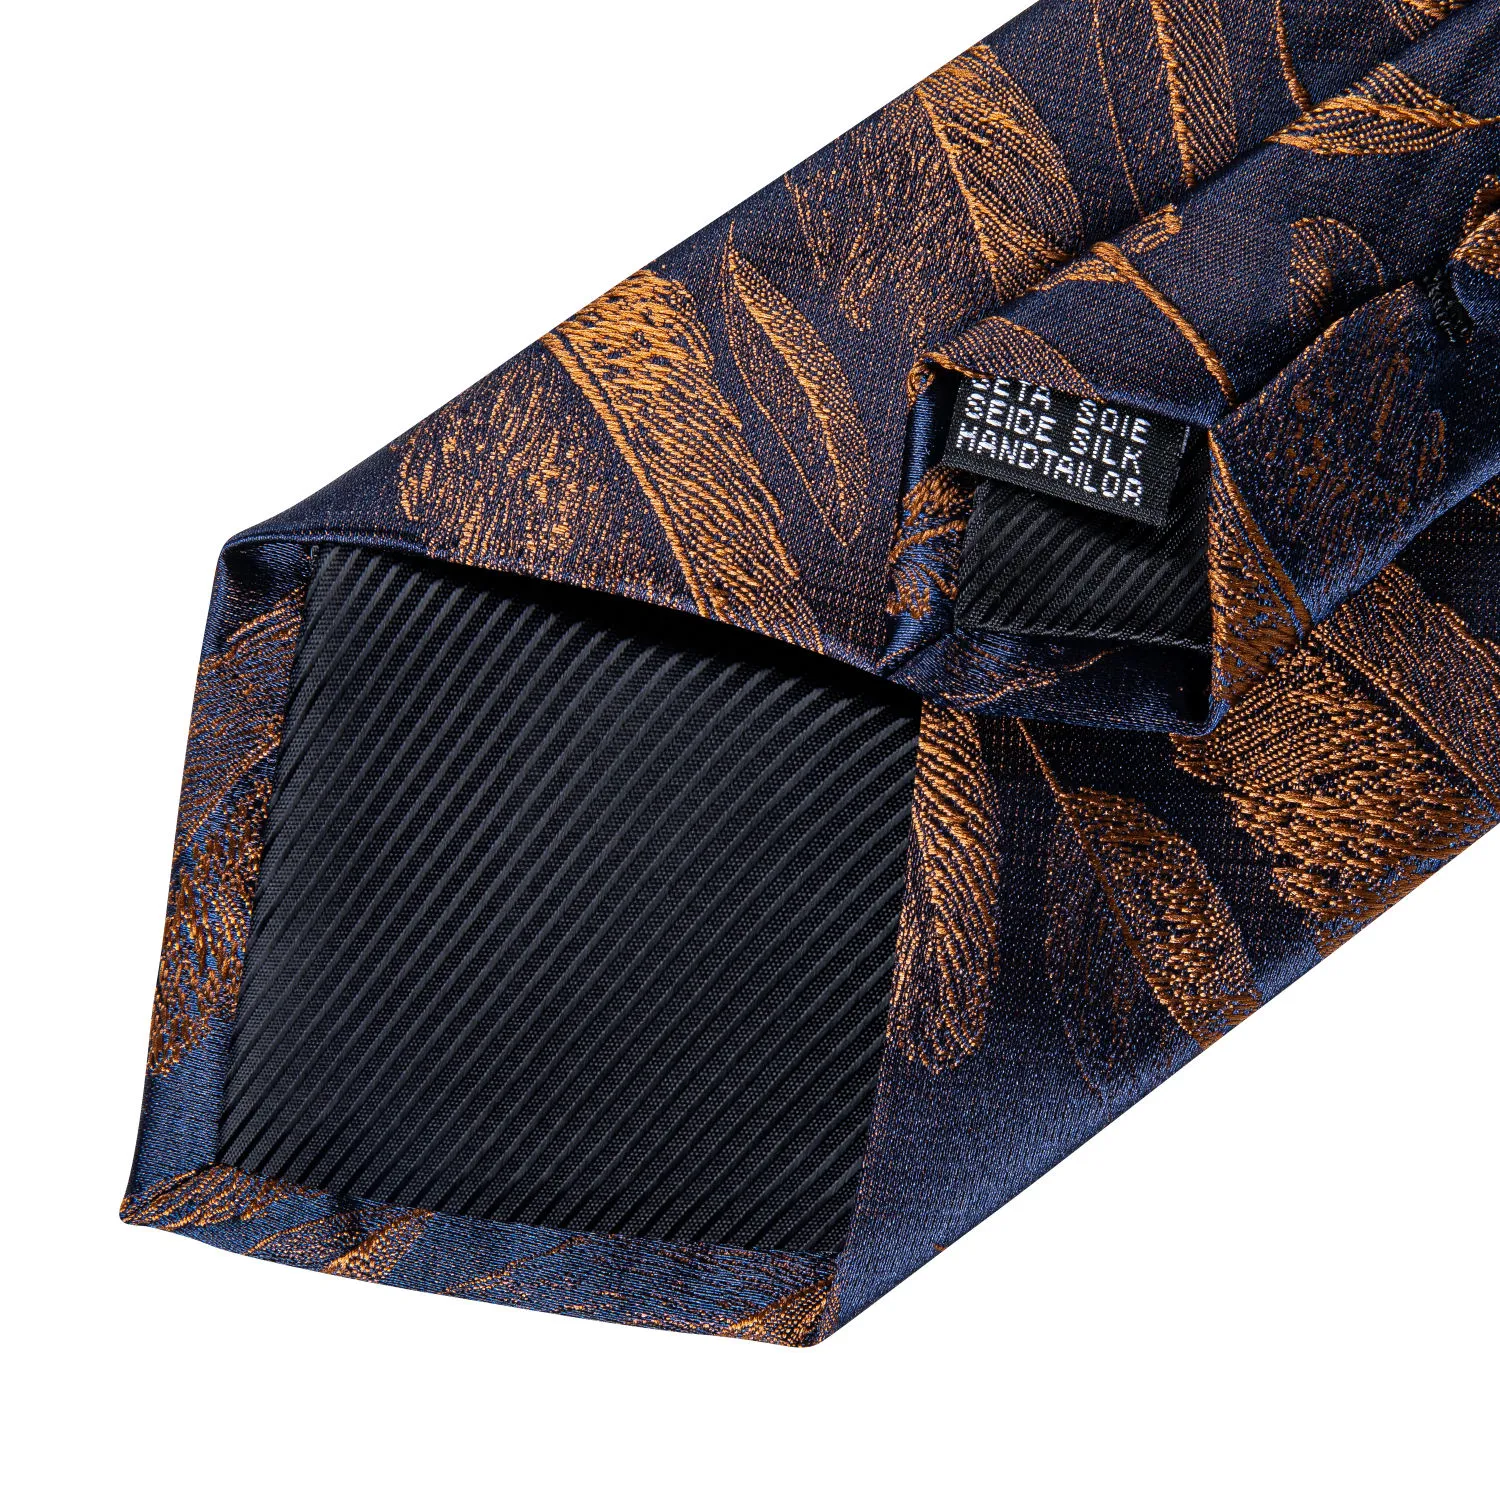 8cm mode guldfjädertryck män siden slipsar näsduk manschettknappar set affärsfest slips gravatas gåva för män dibang2748